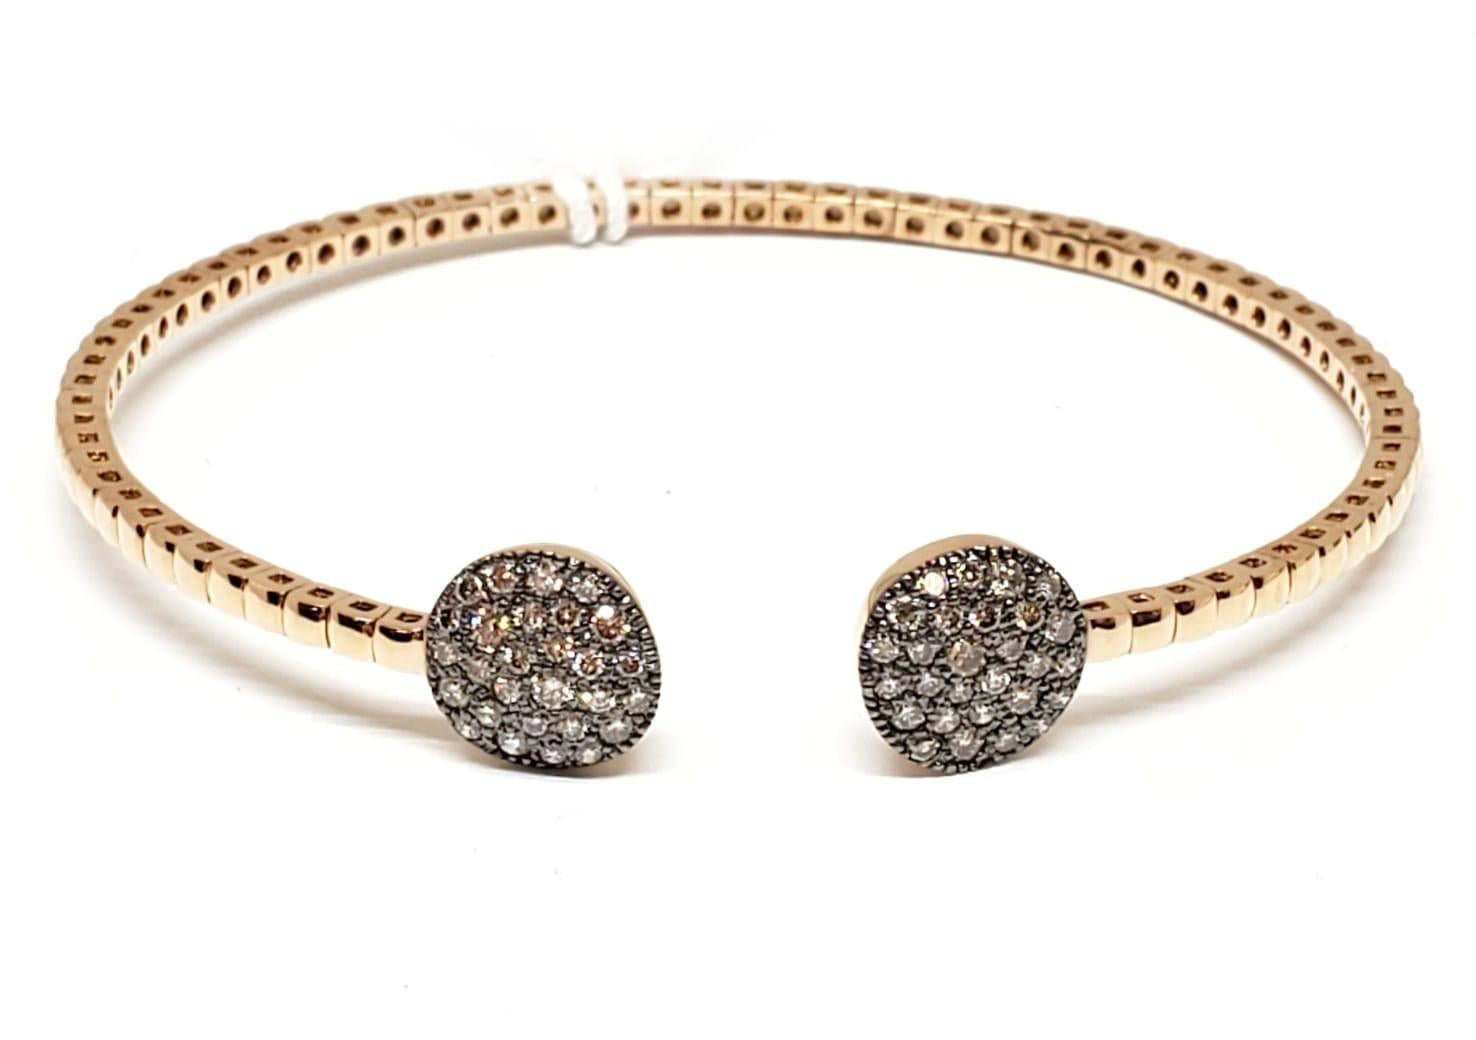 Andreoli Bracelet en or 18 carats avec diamants bruns de 0,77 carat

Ce bracelet présente les caractéristiques suivantes
- Diamant brun de 0,77 carat
- 11.12 Grammes d'or rose 18K
- Fabriqué en Italie